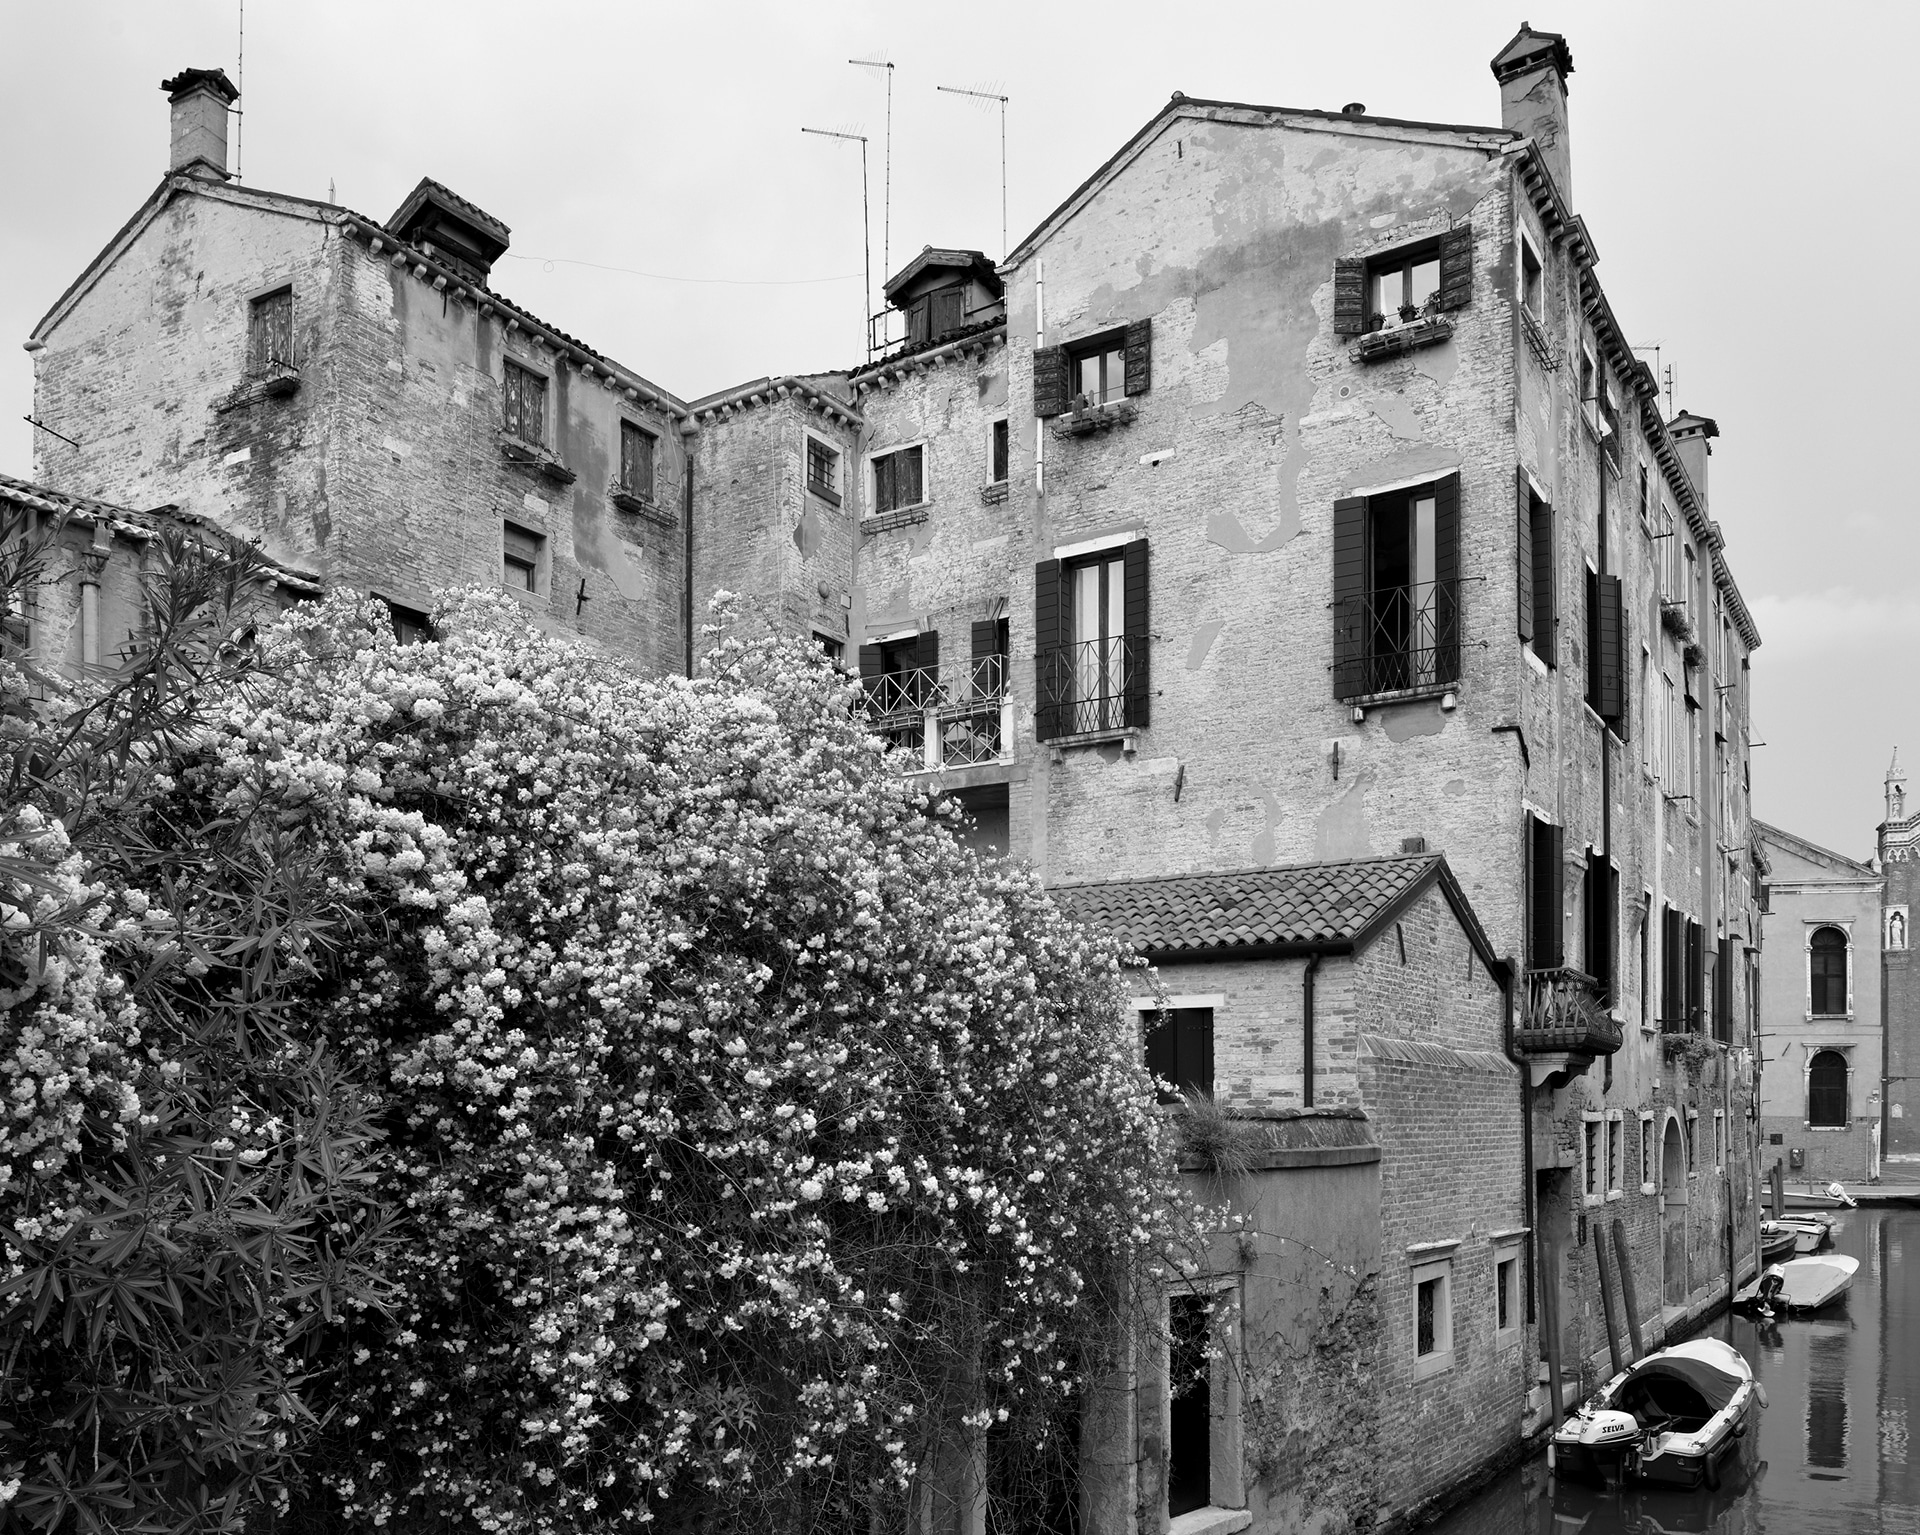 Cannaregio, Fondamenta dei Mori, 2016. Venice Urban Photo Project / Mario Peliti